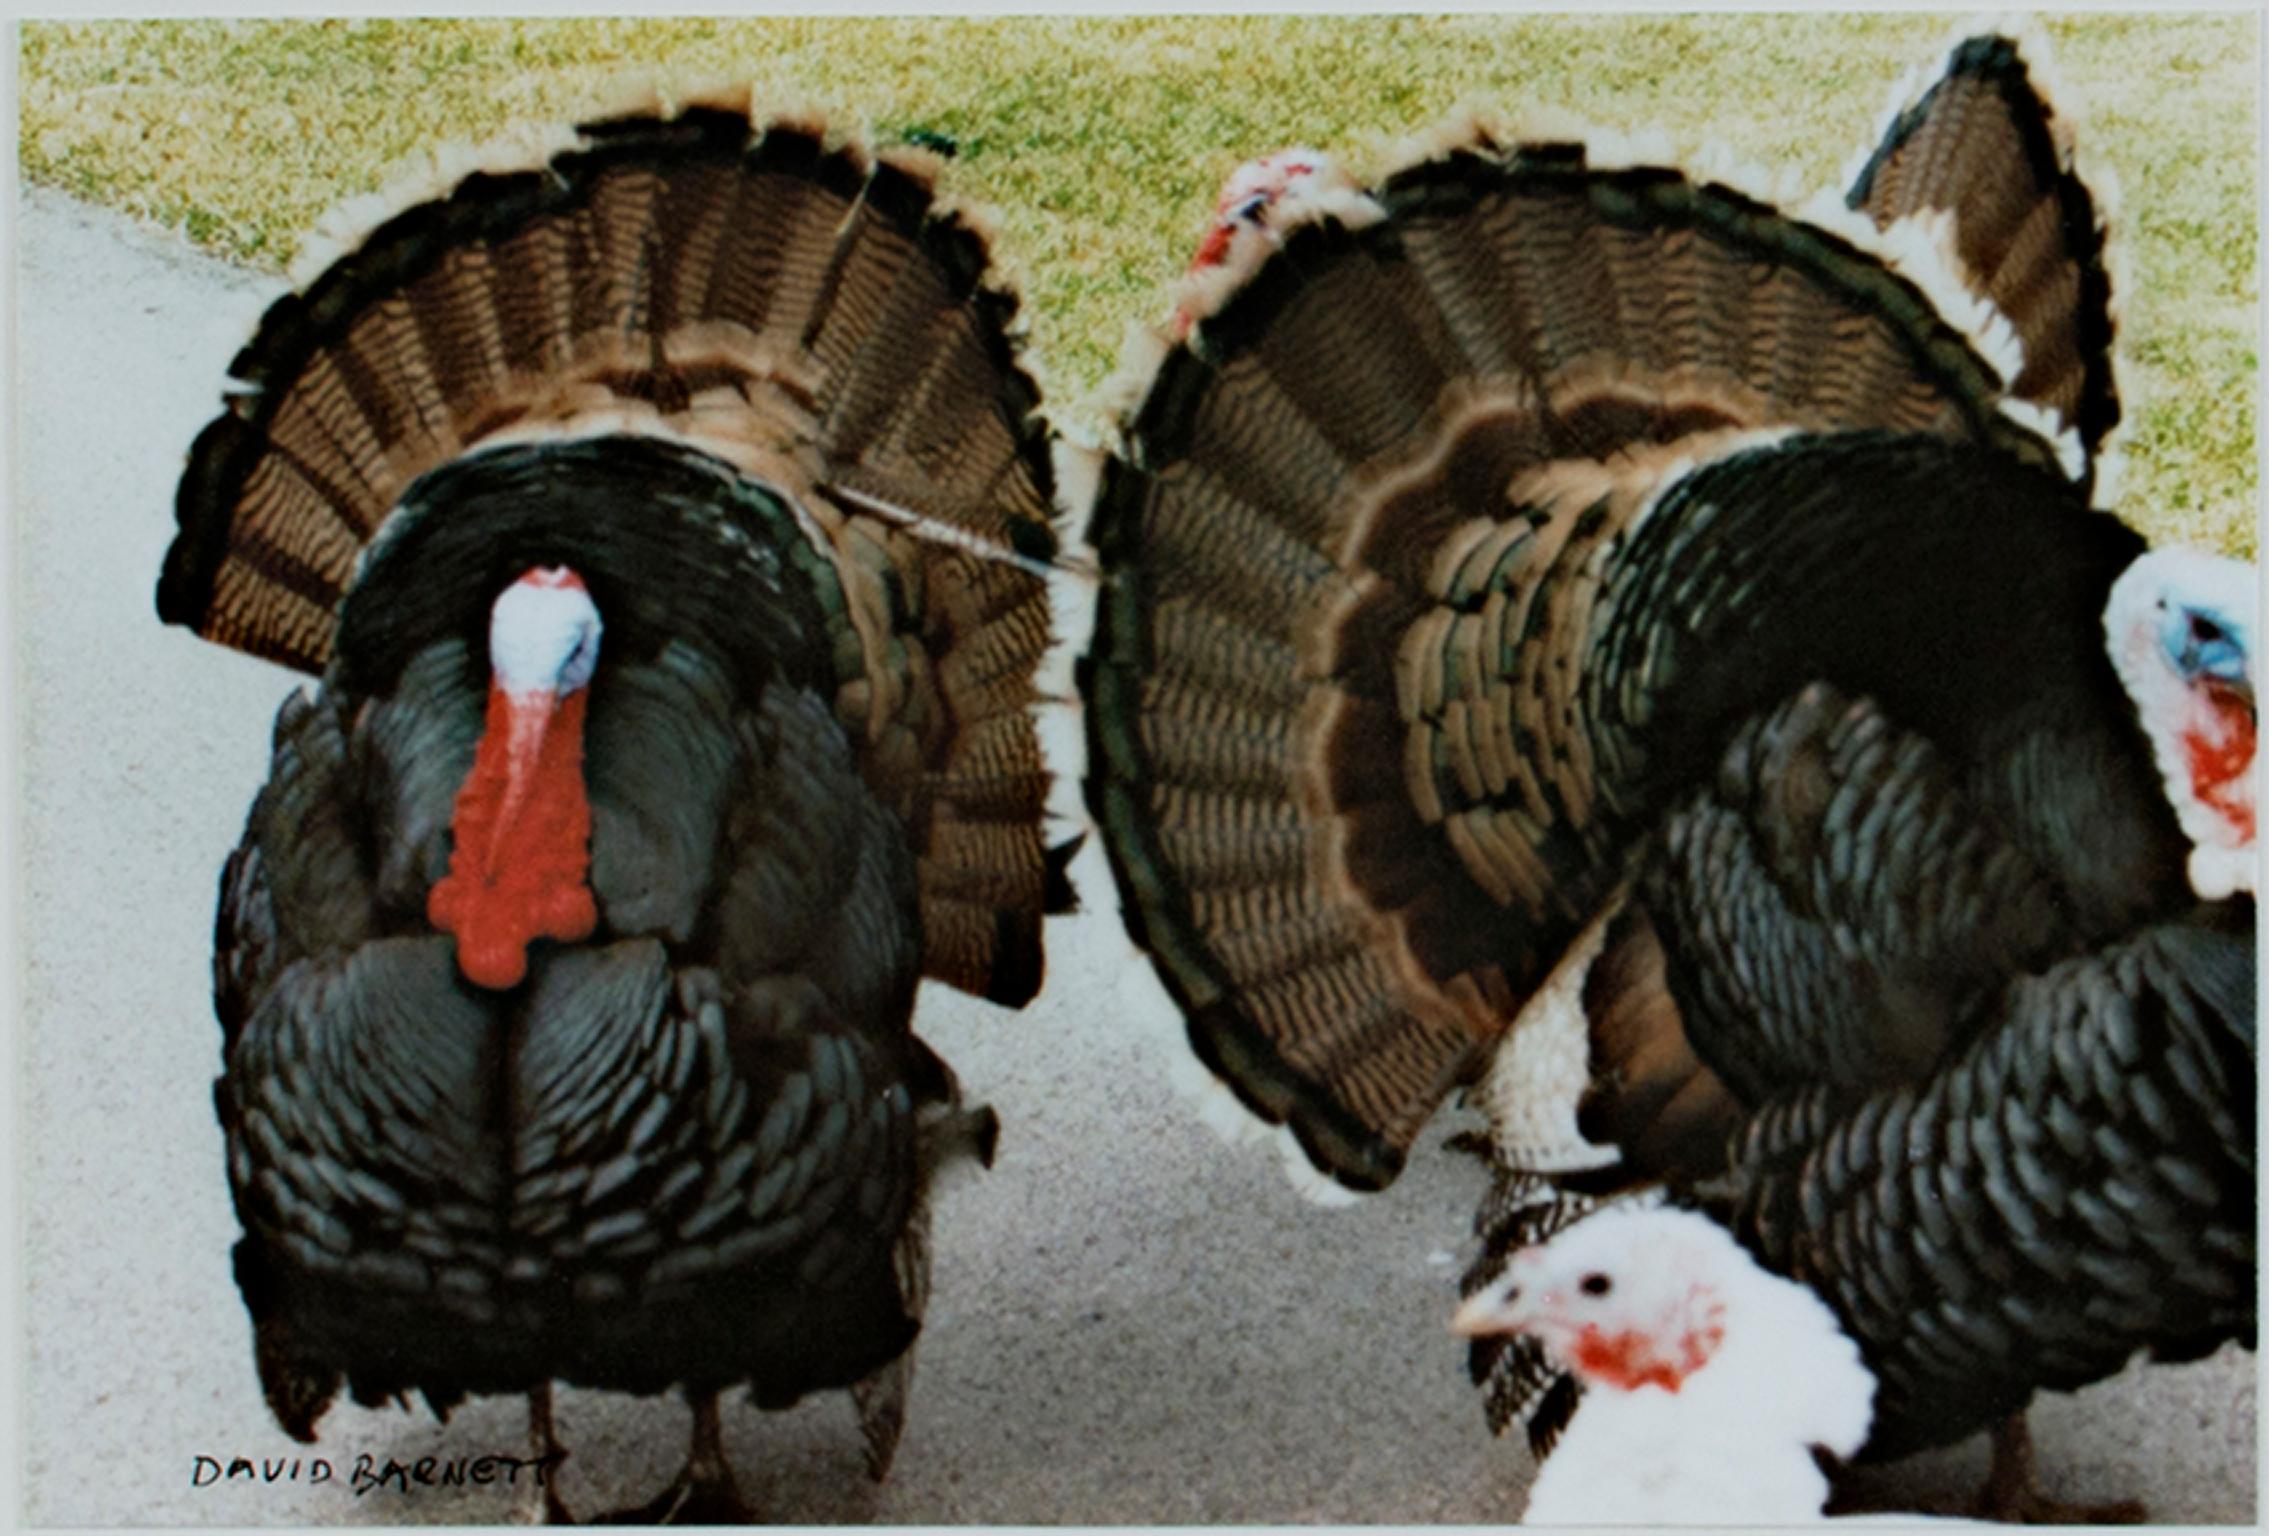 "The Three Musketeers (Quadracci's Turkeys)" est une photographie originale d'art de David Barnett, signée dans le coin inférieur gauche. La photo montre un troupeau de dindes sauvages qui flânent sur un sentier. Les mâles déploient les plumes de